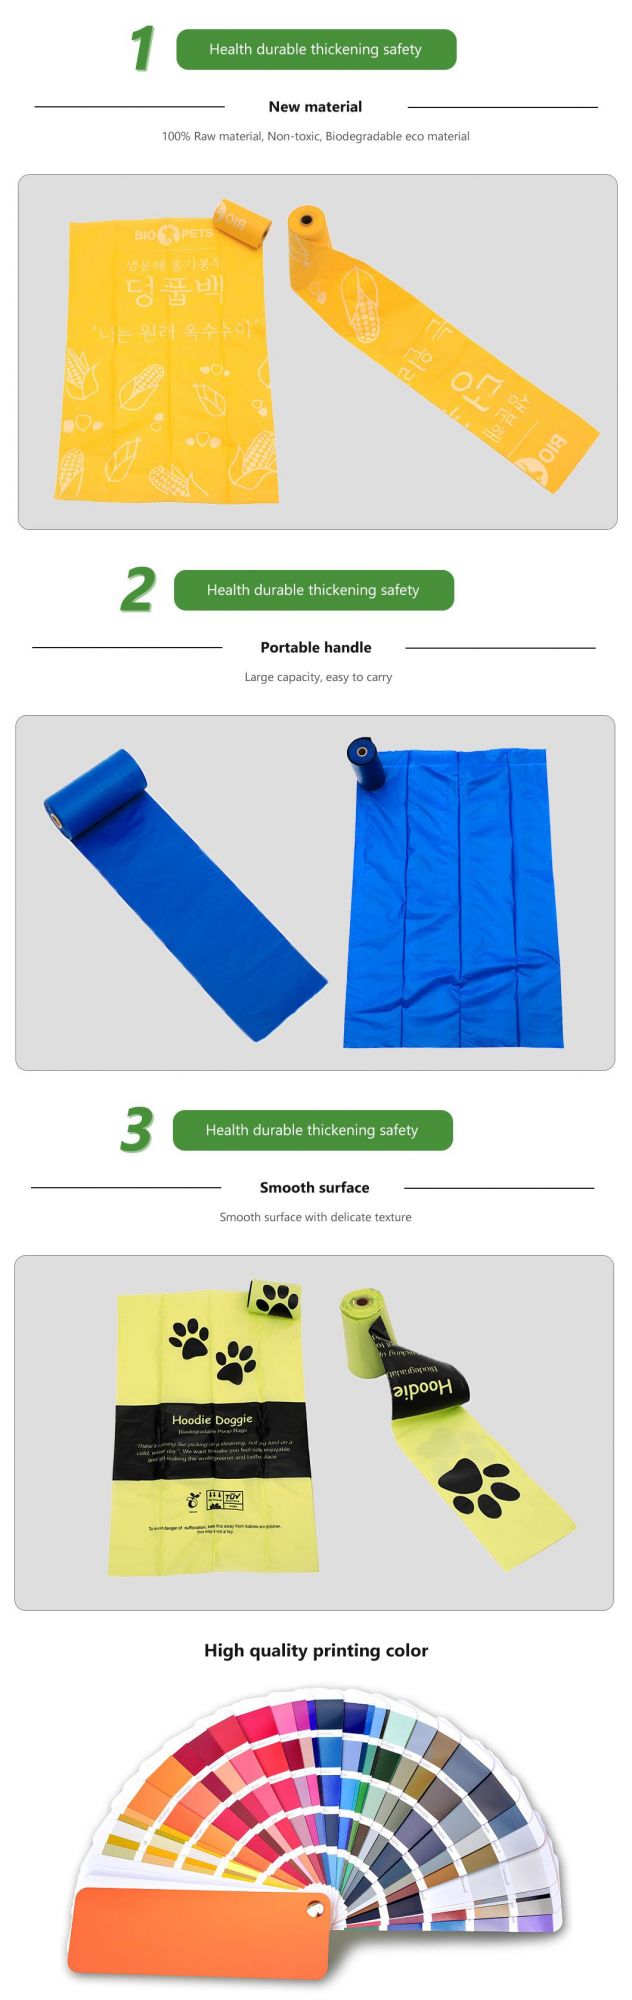 Custom Biodegradable Scented Dog Poop Bag